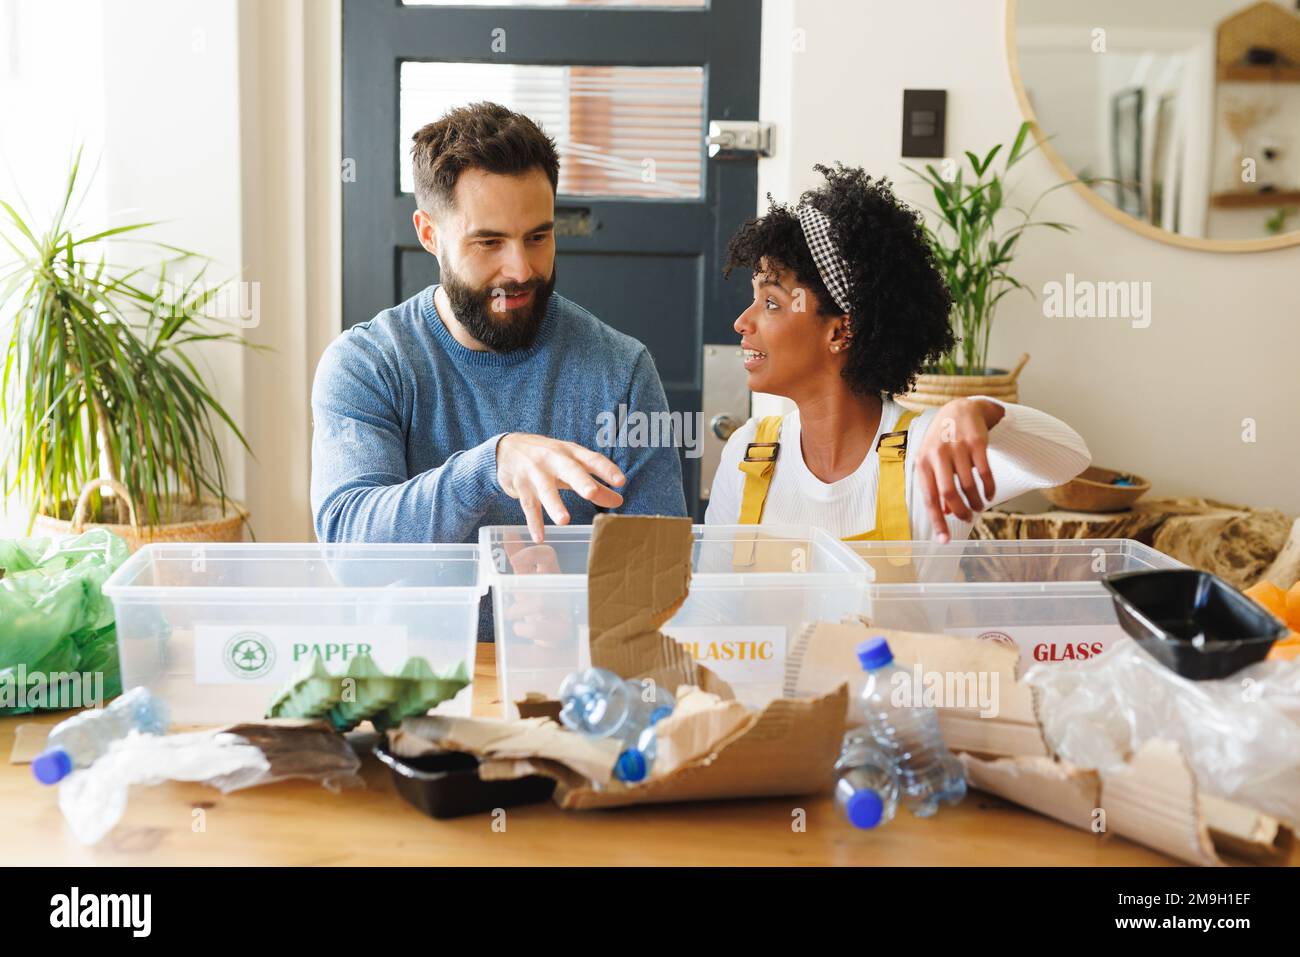 Birassisches junges Paar, das Papier, Kunststoffe und Gläser in Mülltonnen auf dem Tisch diskutiert und sortiert Stockfoto